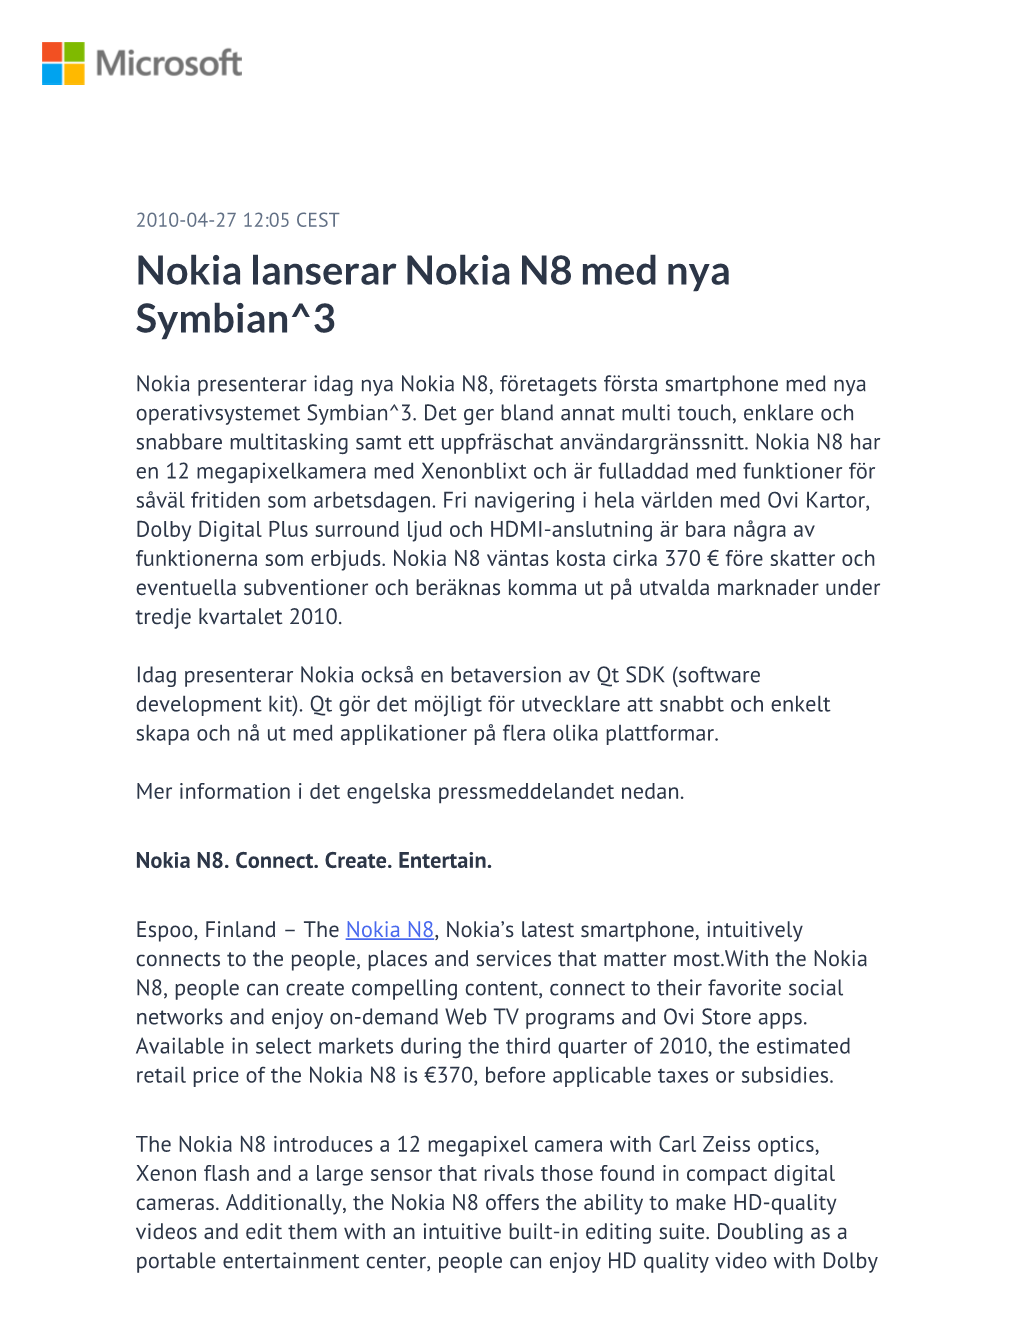 Nokia Lanserar Nokia N8 Med Nya Symbian^3